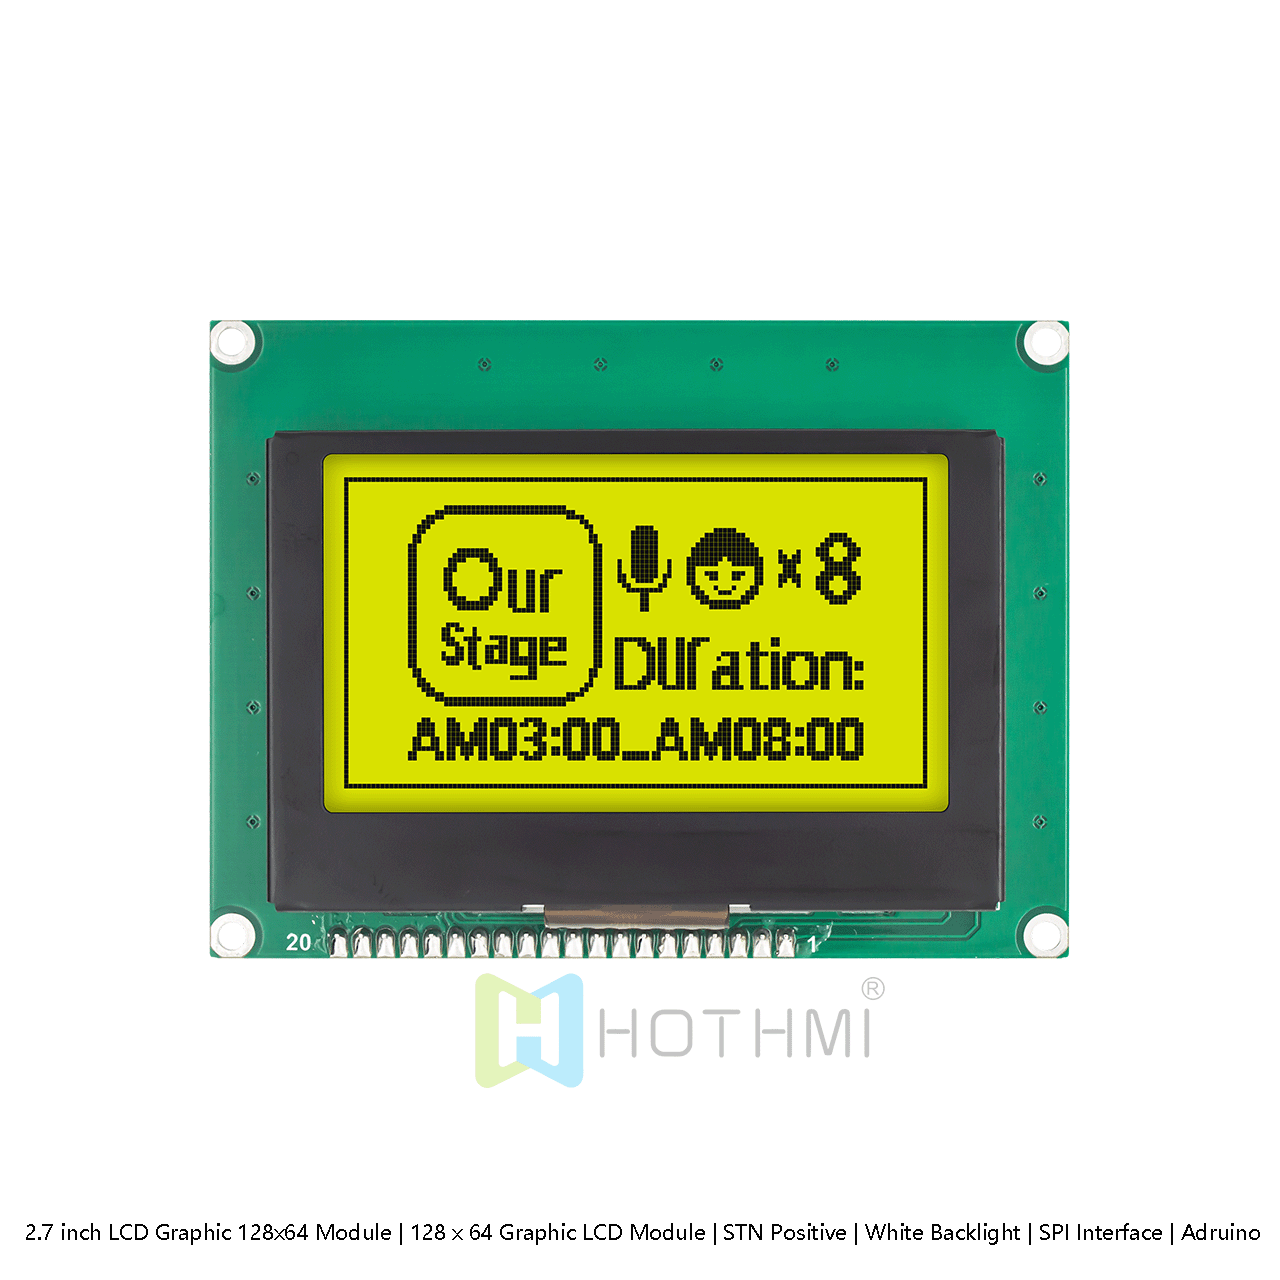 2.7 英寸 图形LCD 128x64 模组 | 128 x 64 图形 LCD  | STN 正极 | 黄绿色背光 | SPI 接口 